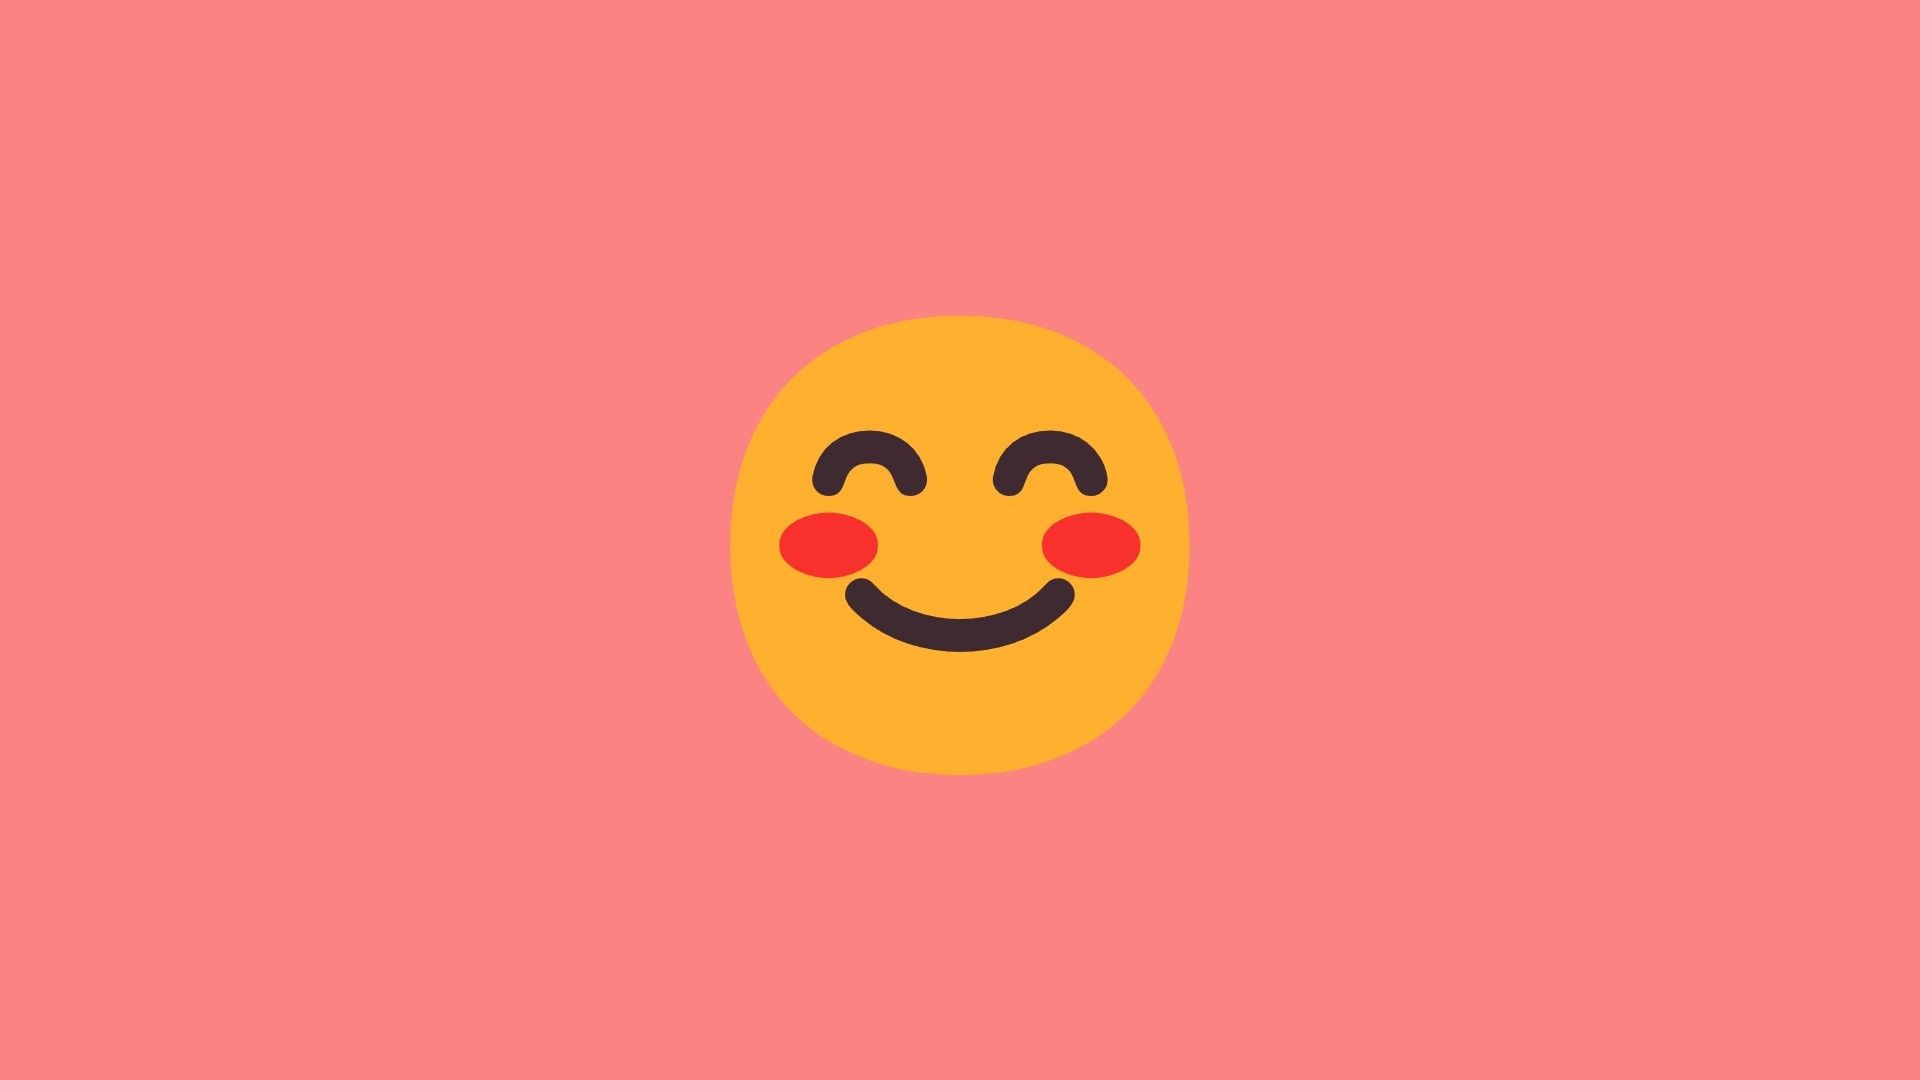 Emoji 10 smiling face with smiling eyes